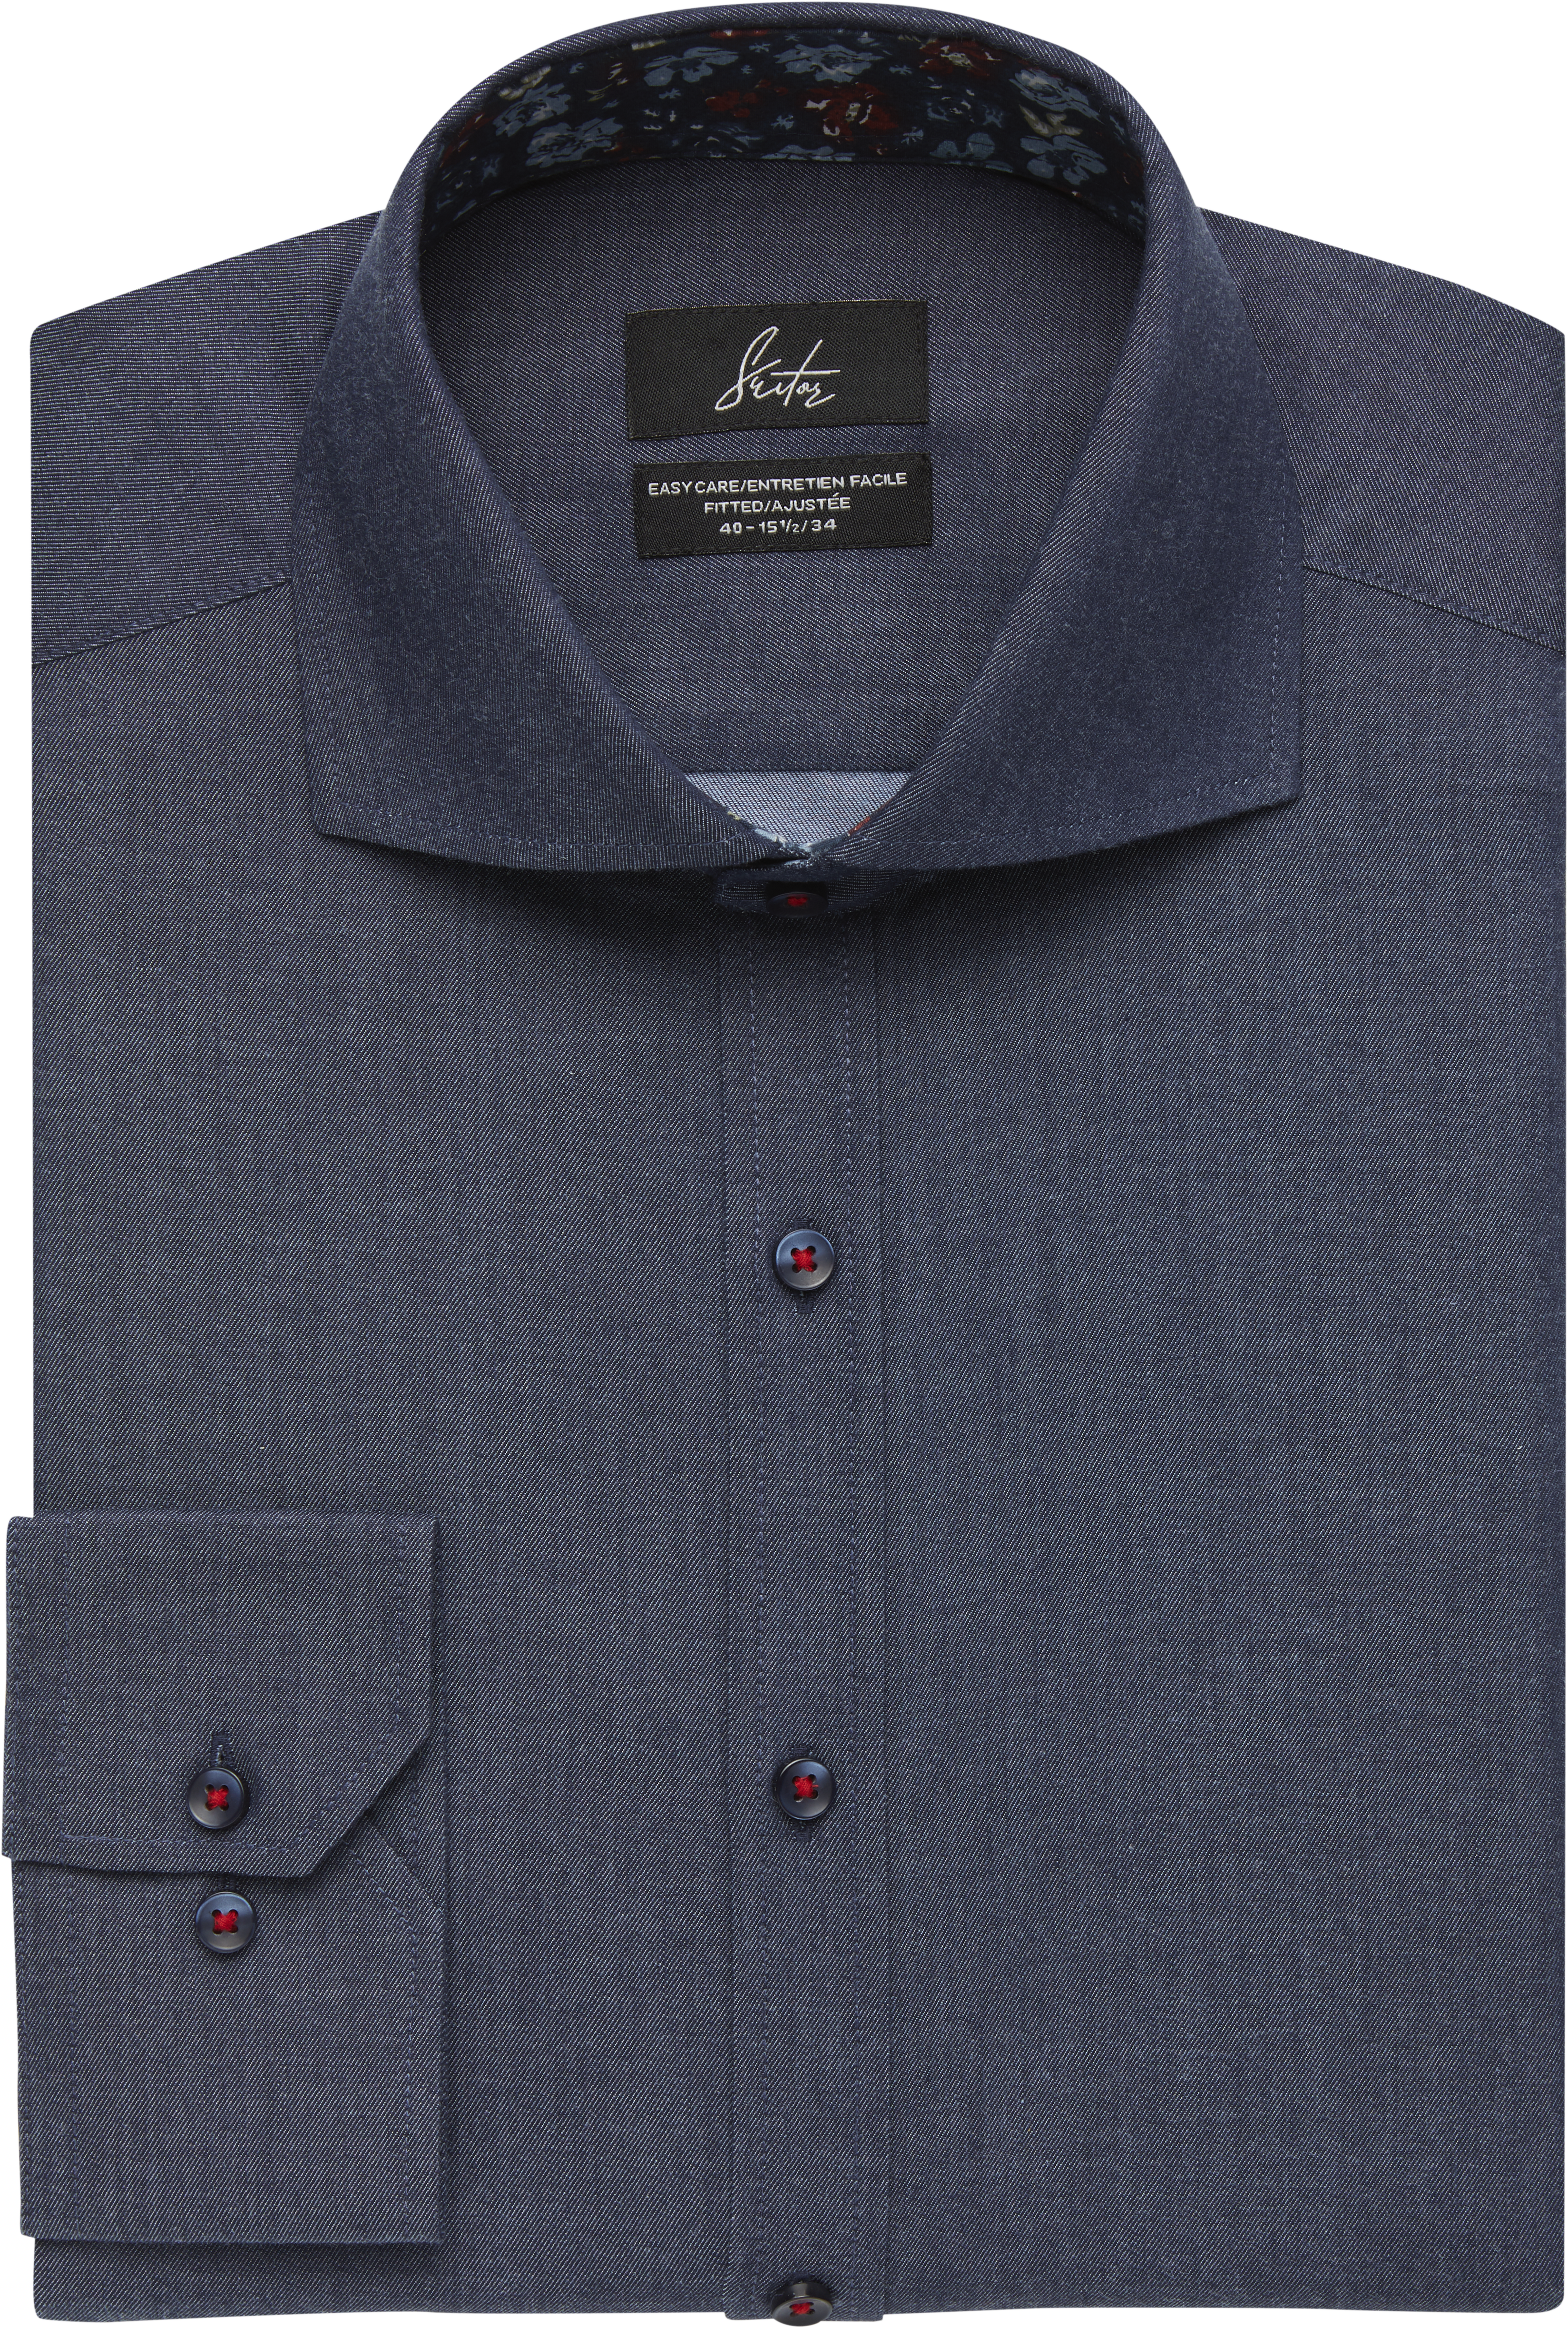 Suitor Indigo Blue Slim Fit Dress Shirt - Men's Sale | Men's Wearhouse